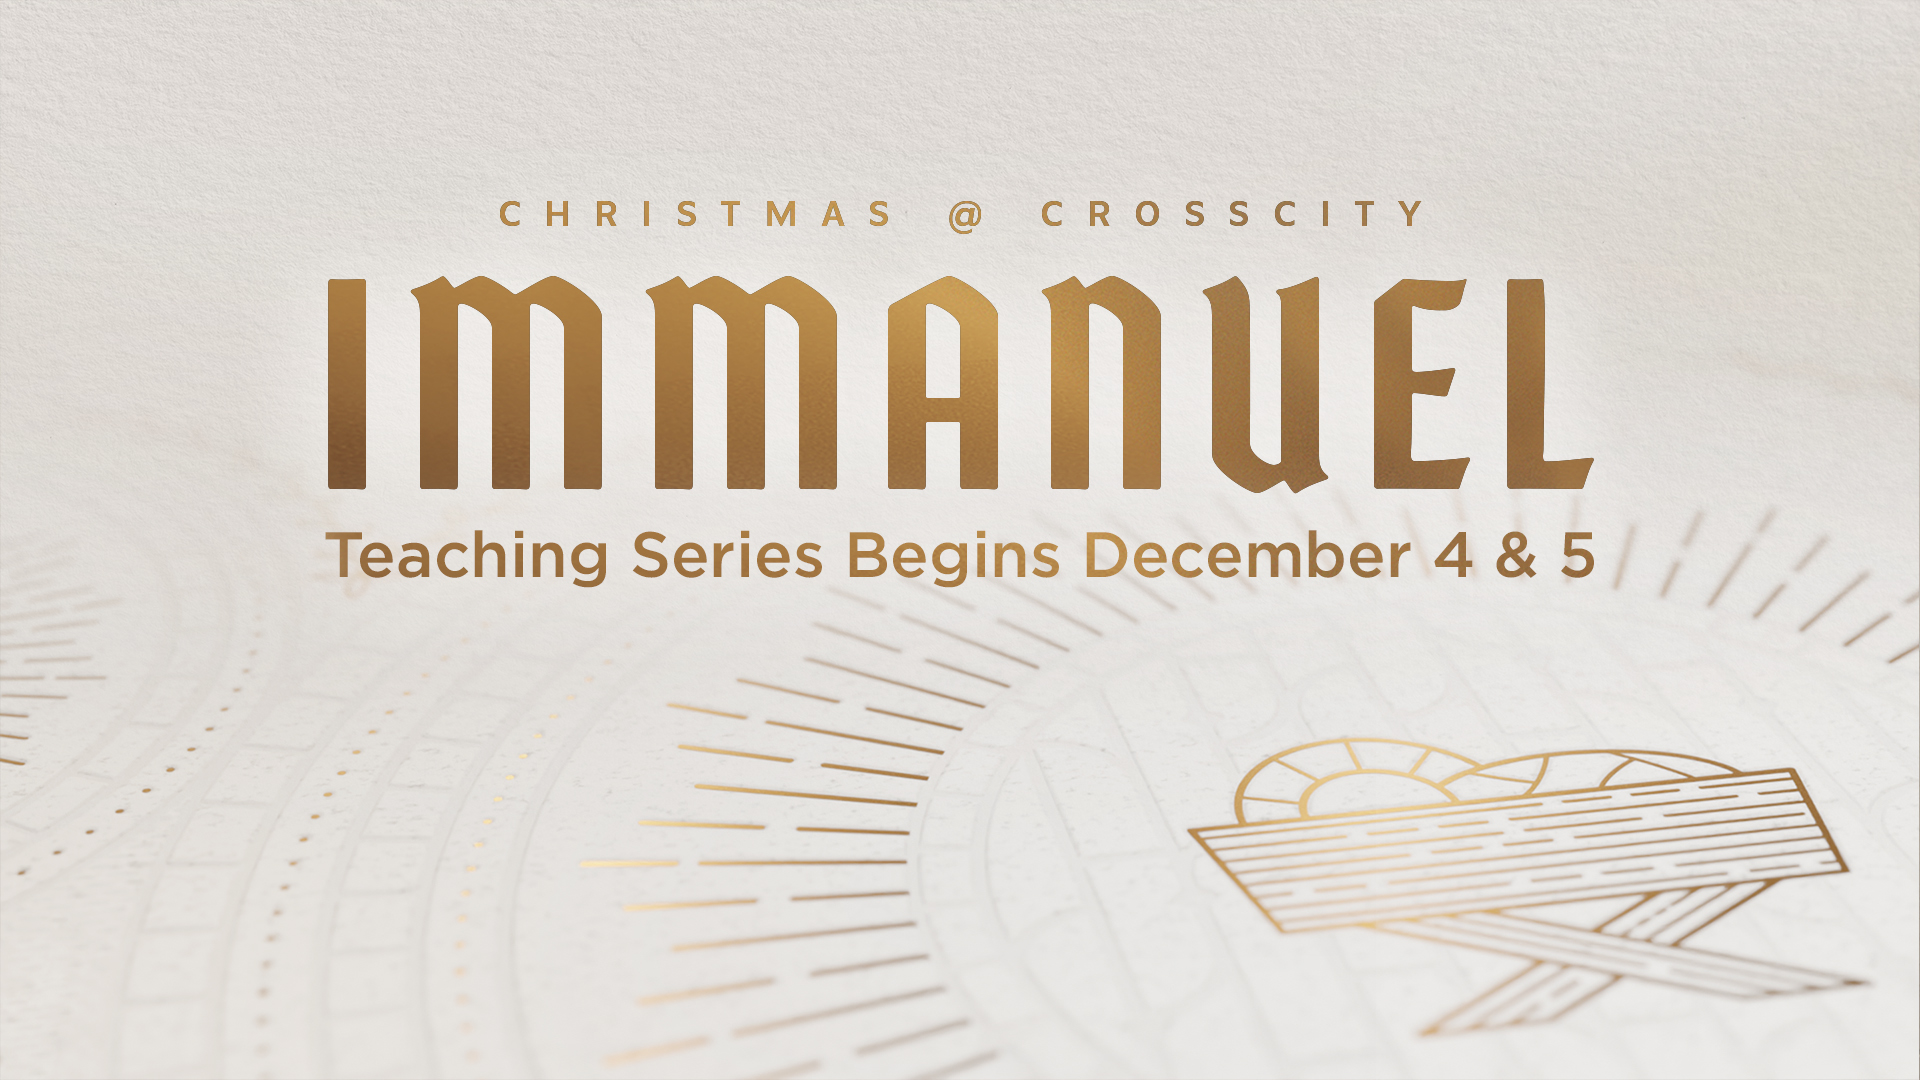 ChristmasCrossCity Immanuel Teaser